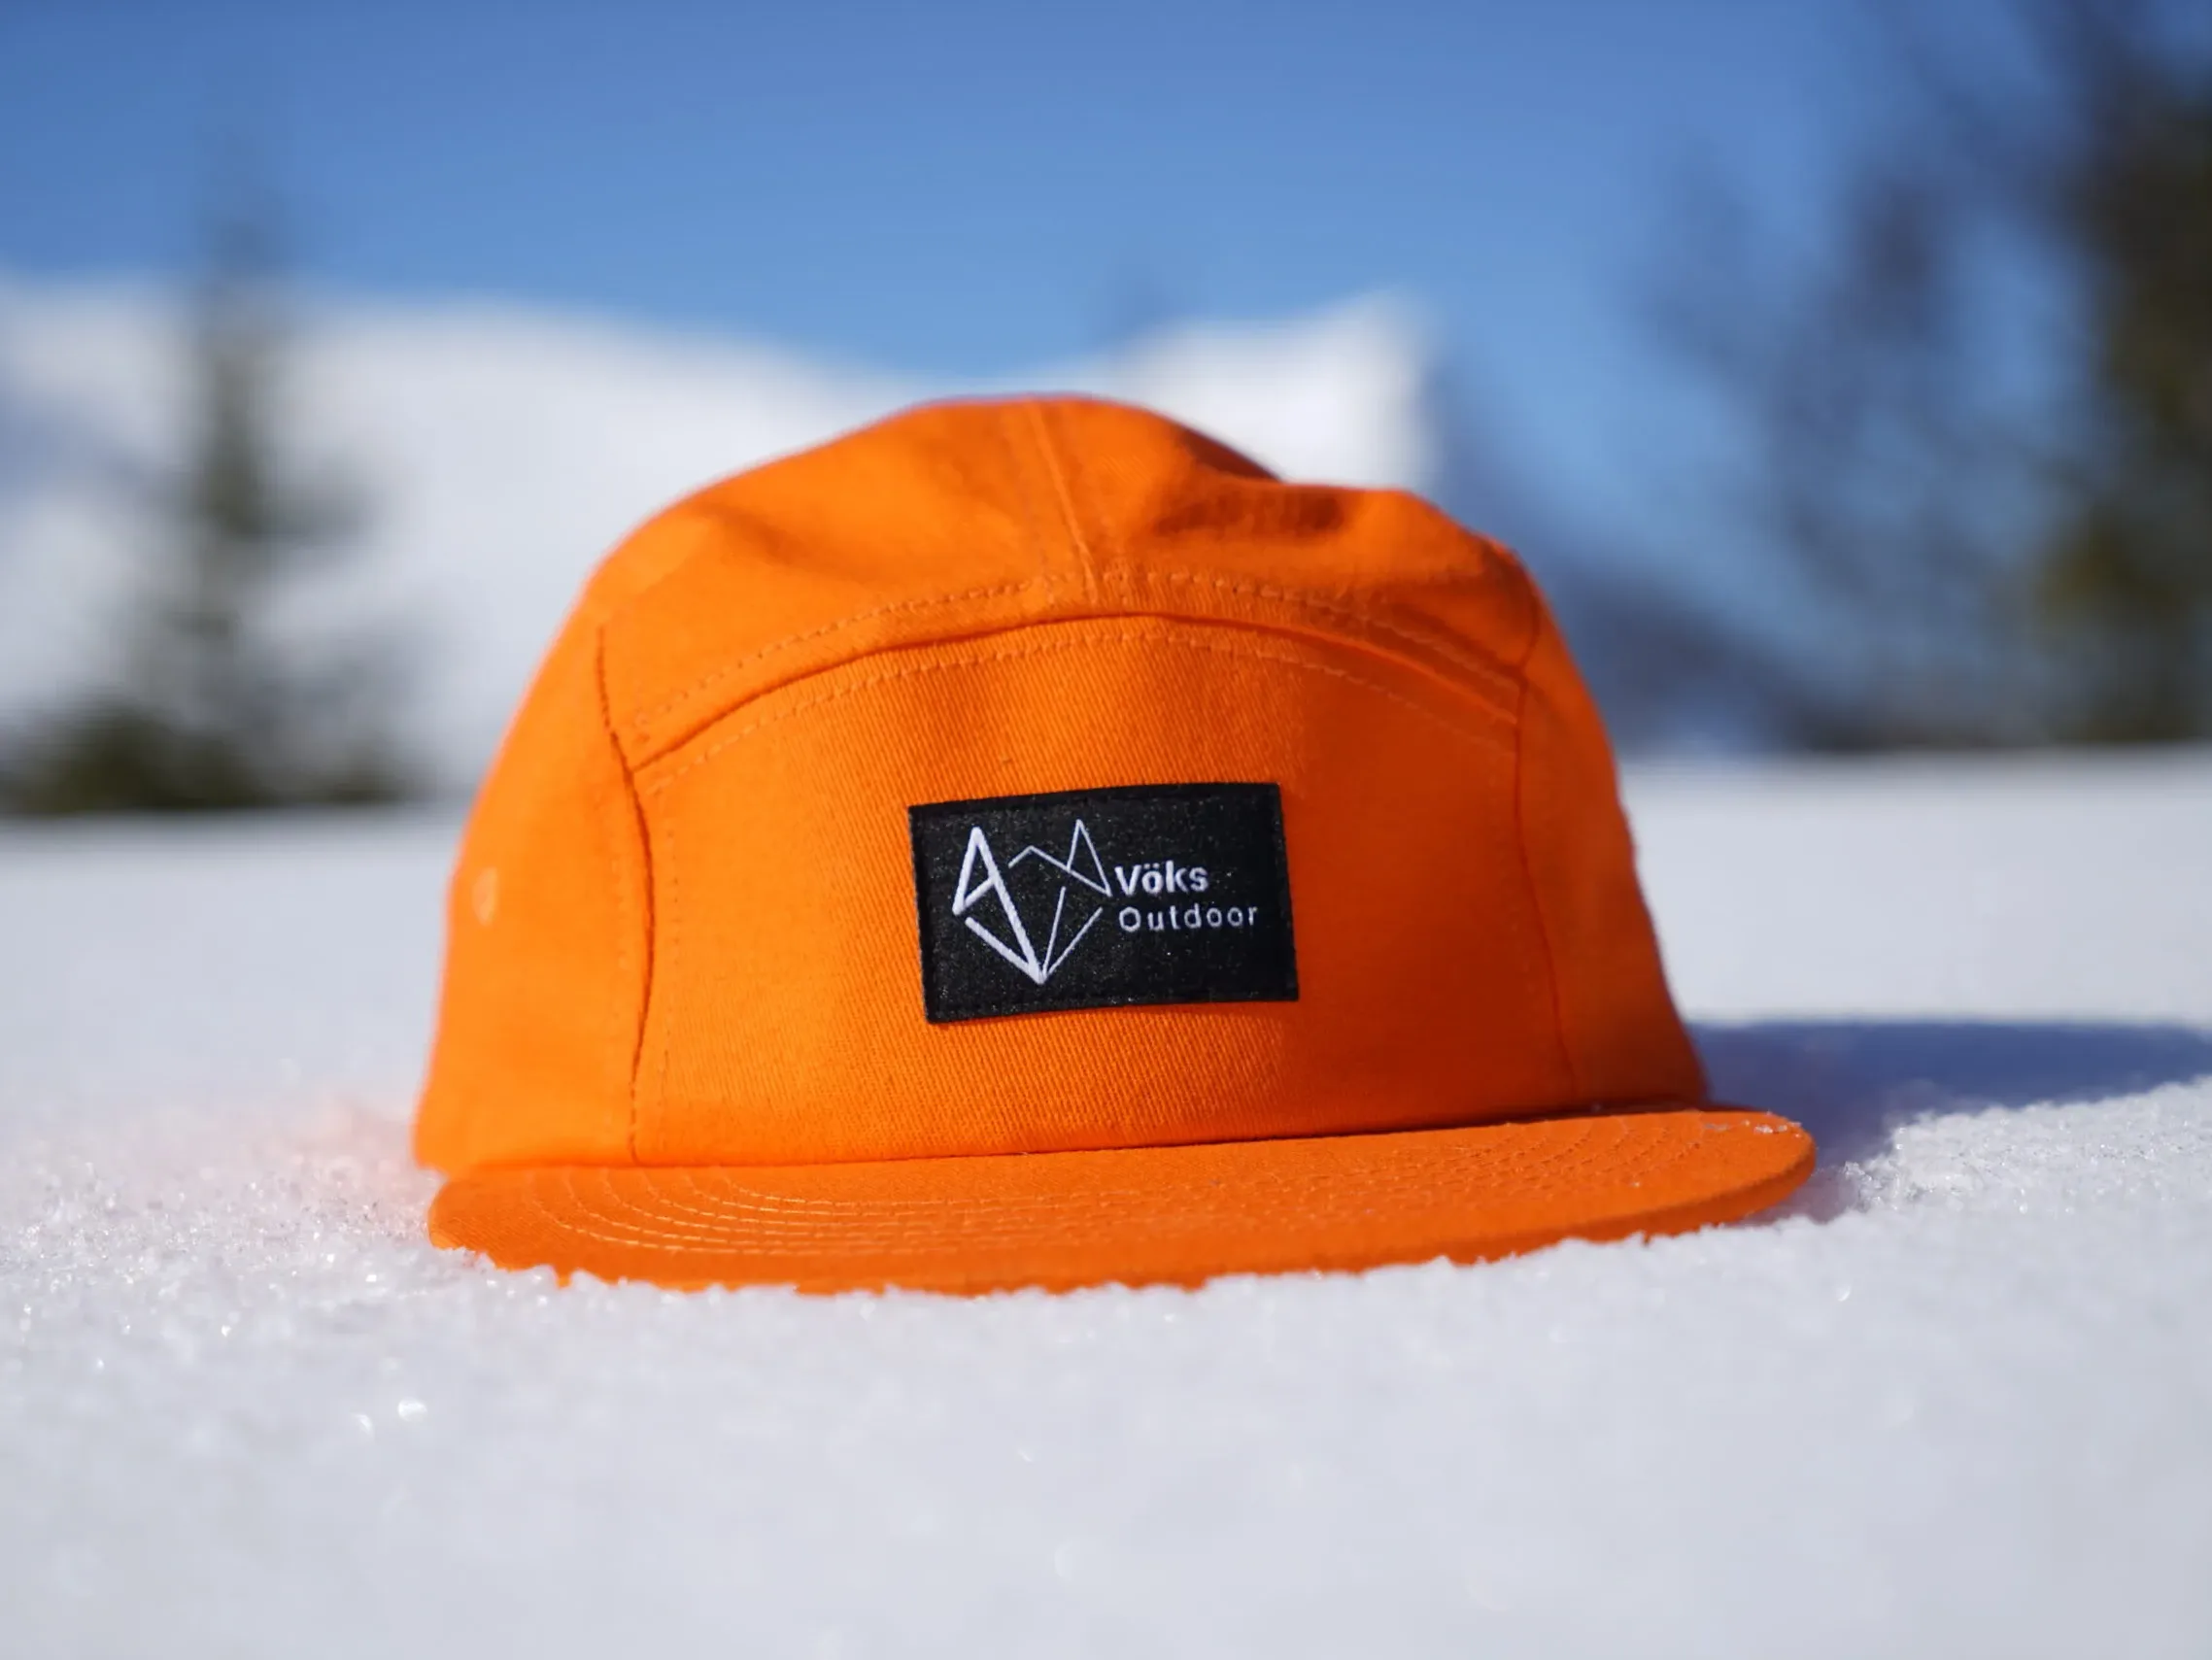 Vöks Outdoor orange five-panel cap in snow